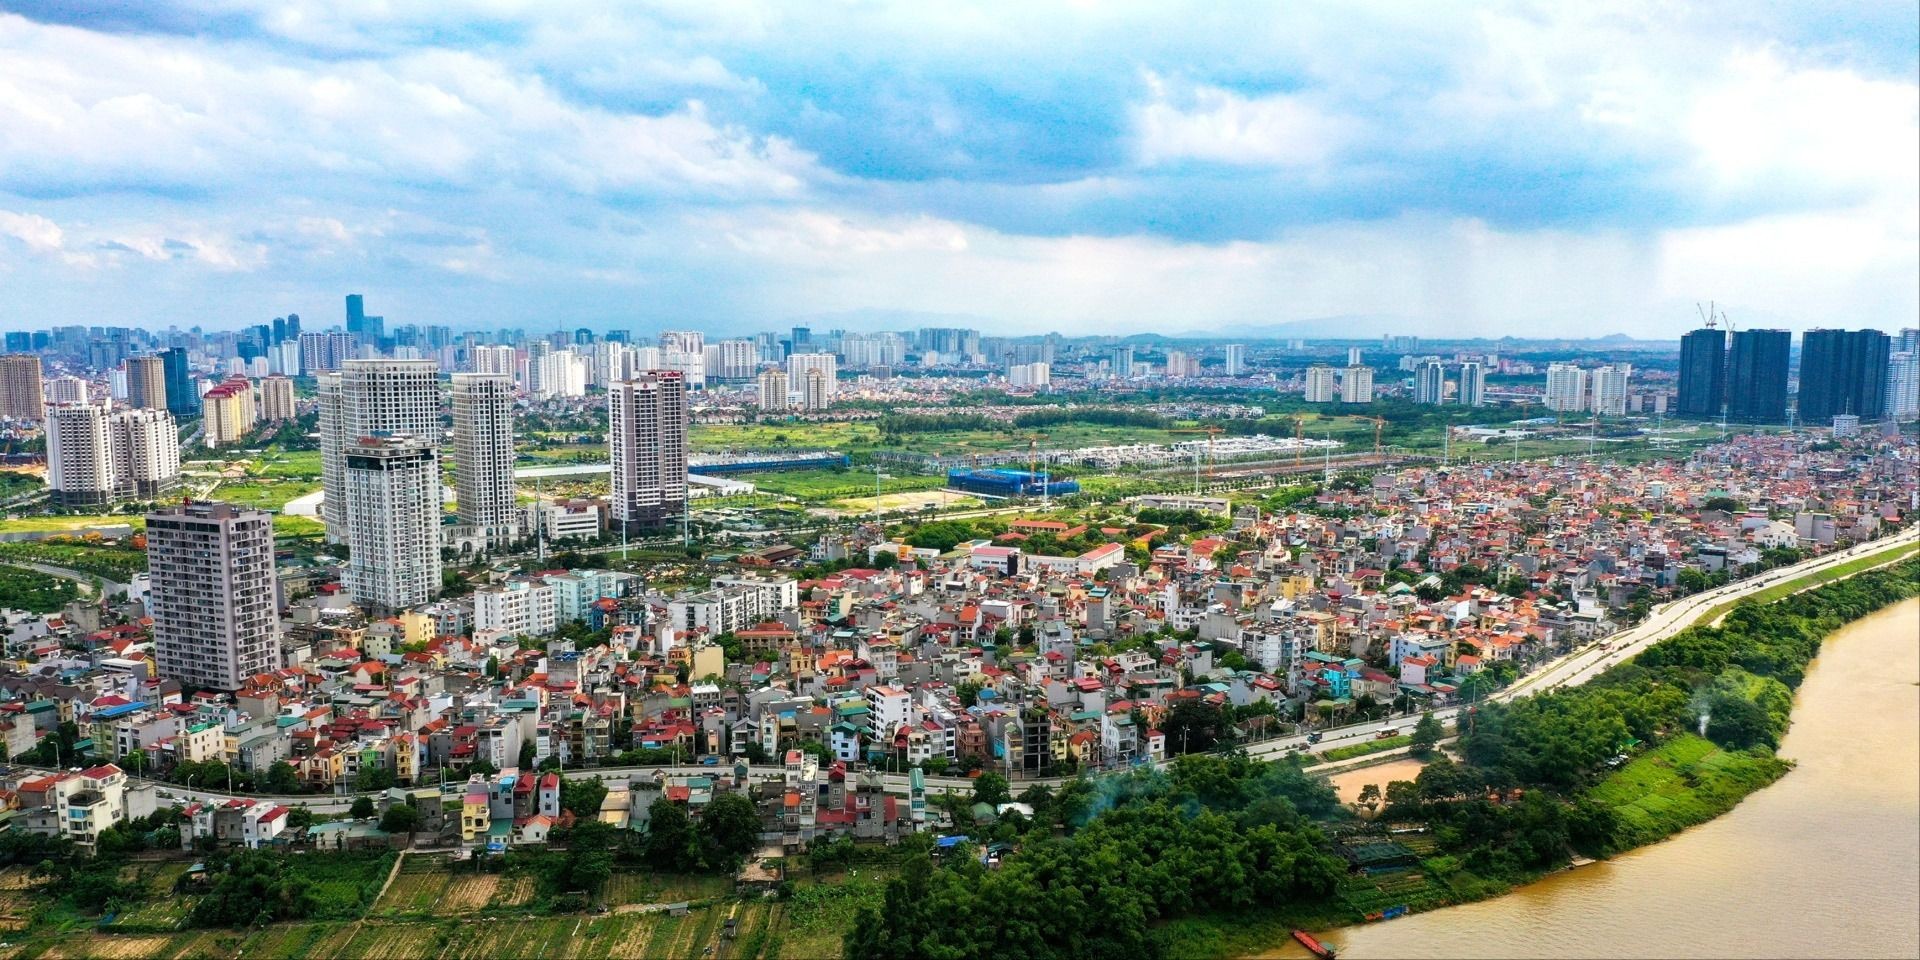 Thị trường bất động sản Việt Nam: “Món ngon” trong mắt nhà đầu tư ngoại